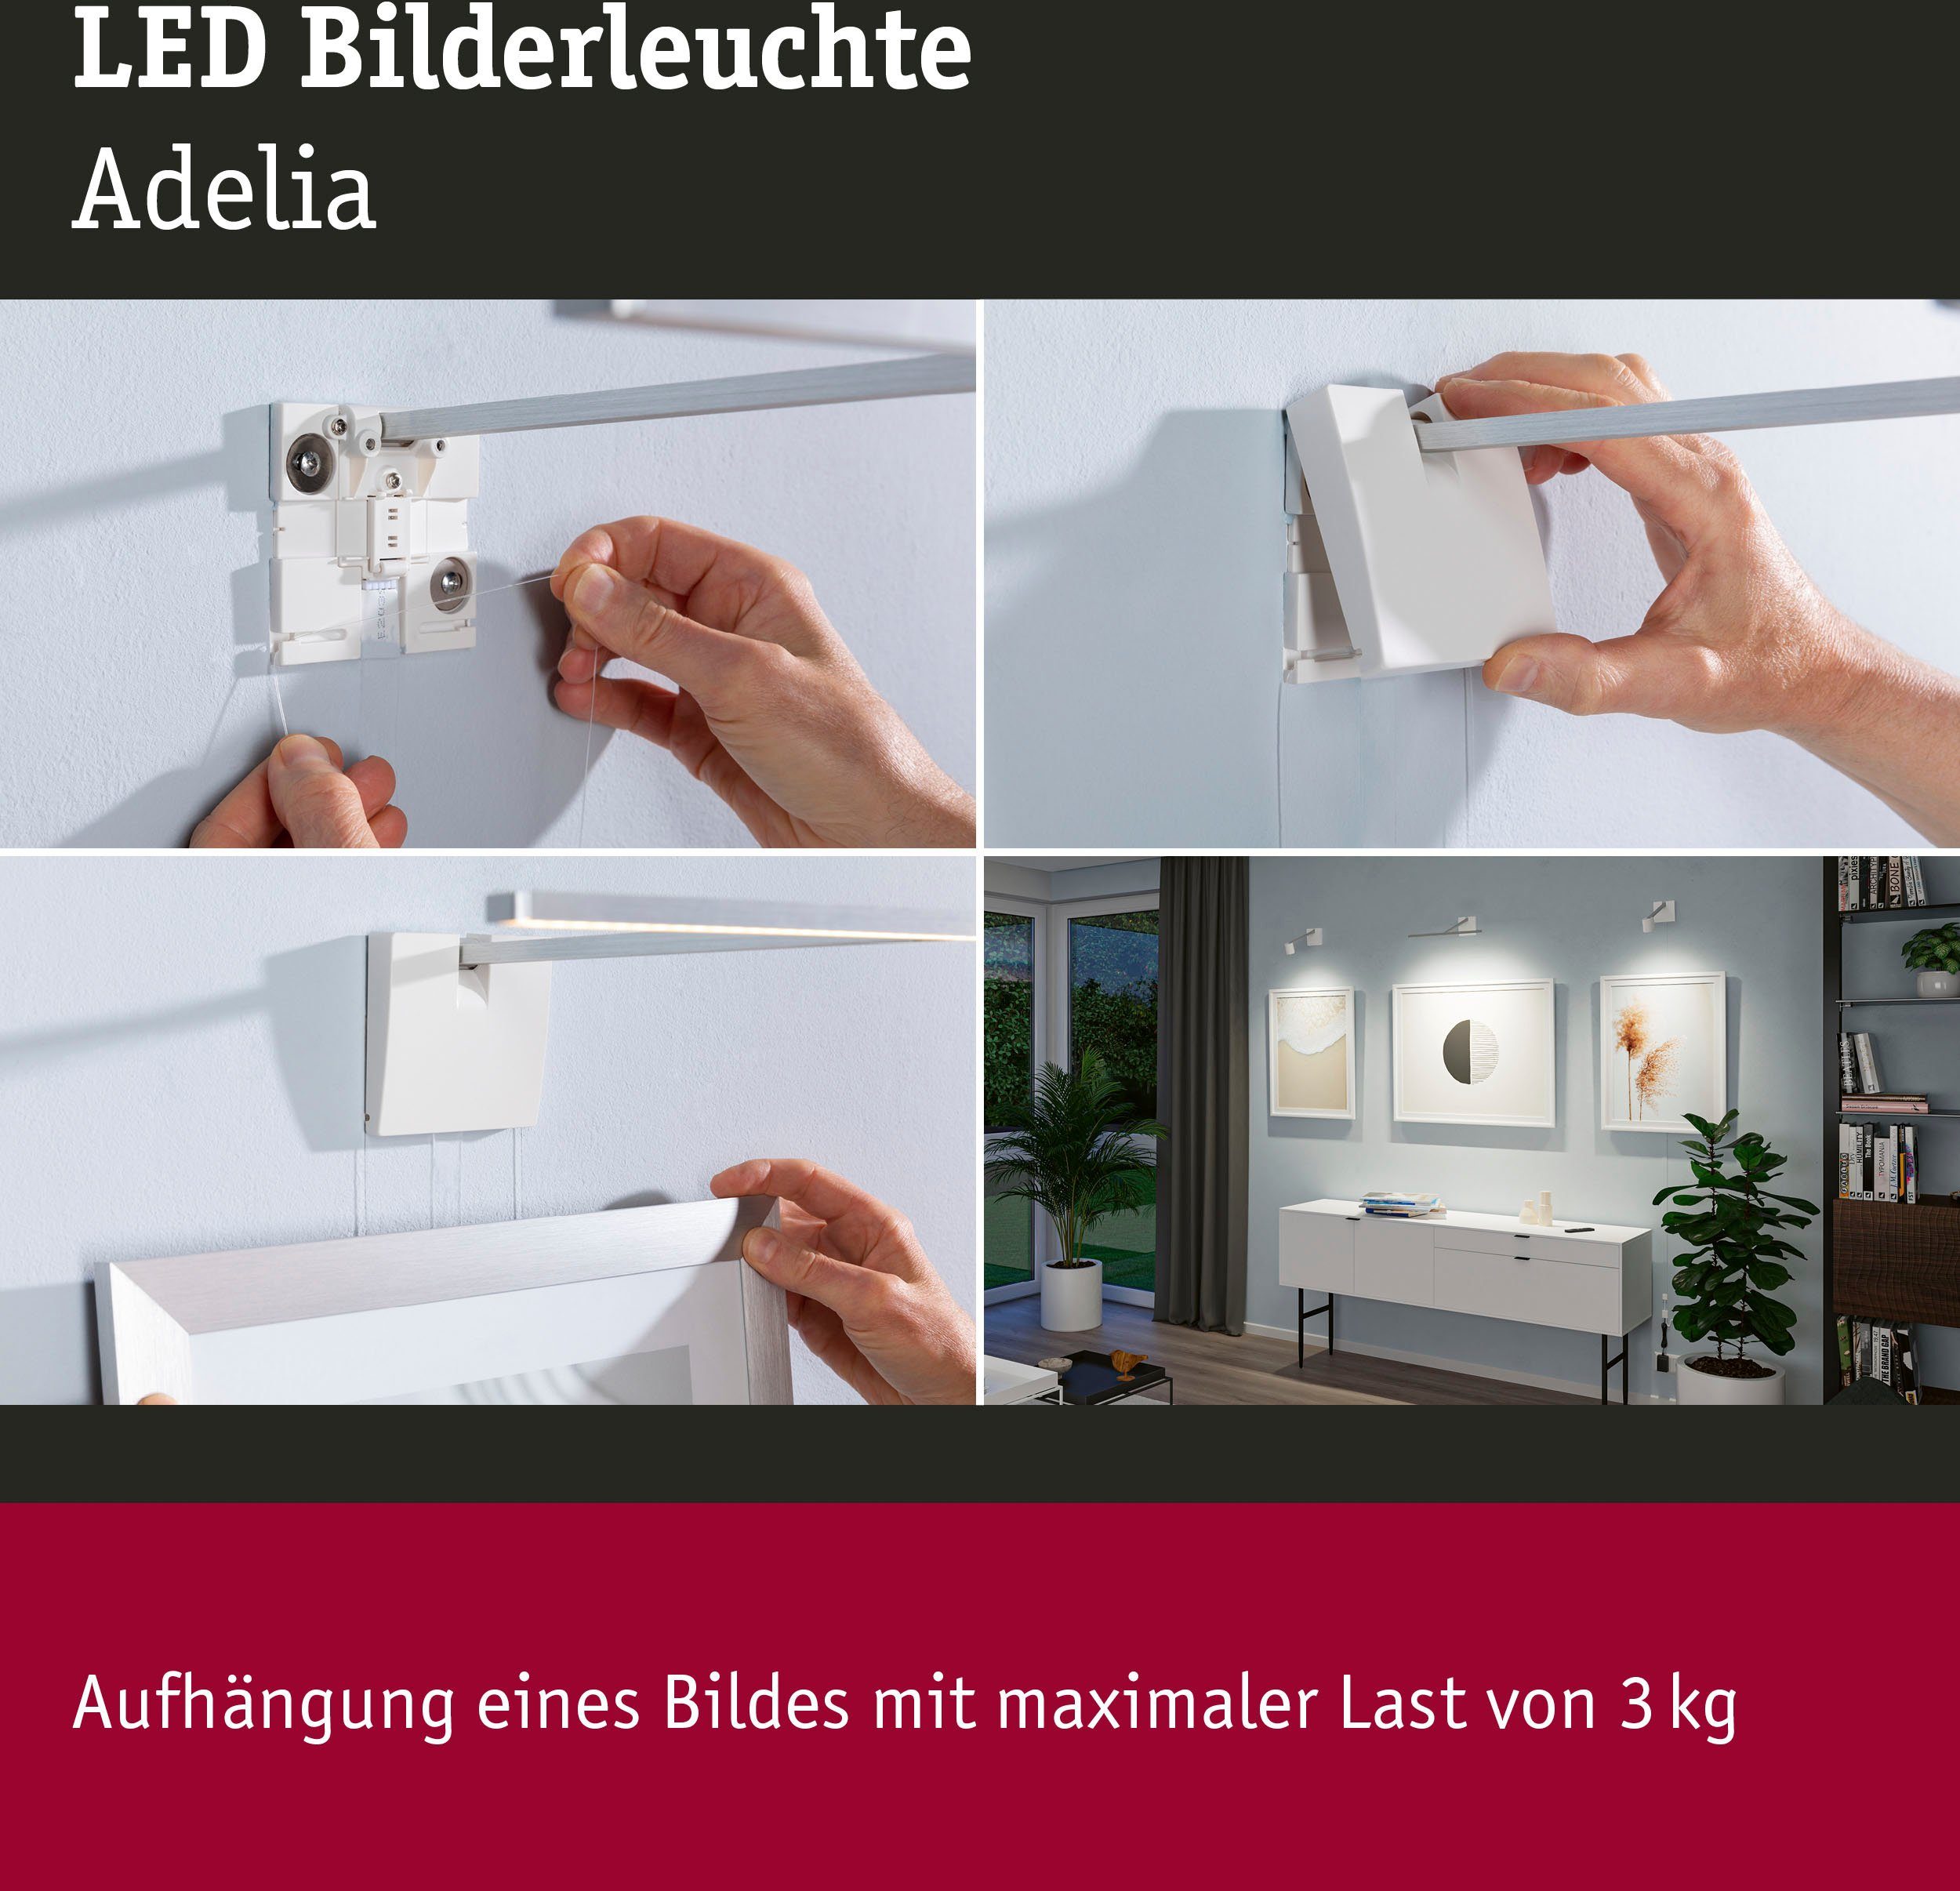 fest LED Adelia, dimmbar LED Warmweiß, Bilderleuchte integriert, Paulmann